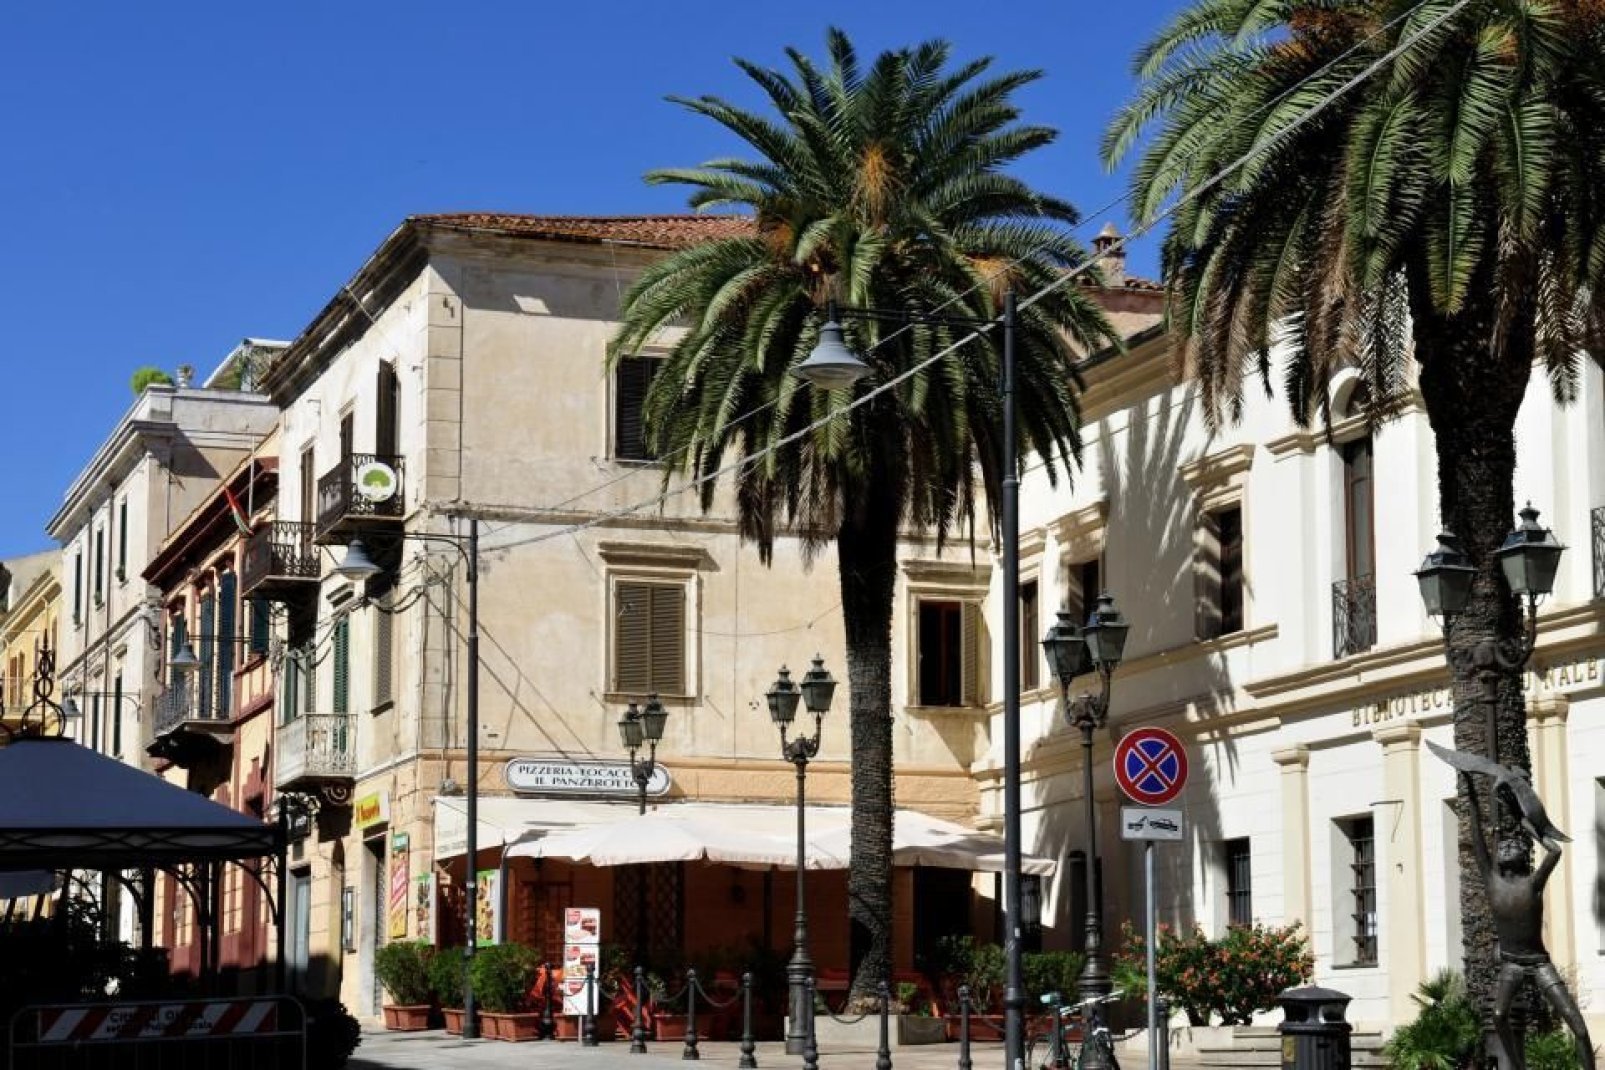 Corso Umberto I costituisce la spina dorsale del centro di Olbia. Vi si trovano numerosi negozi e ristoranti.